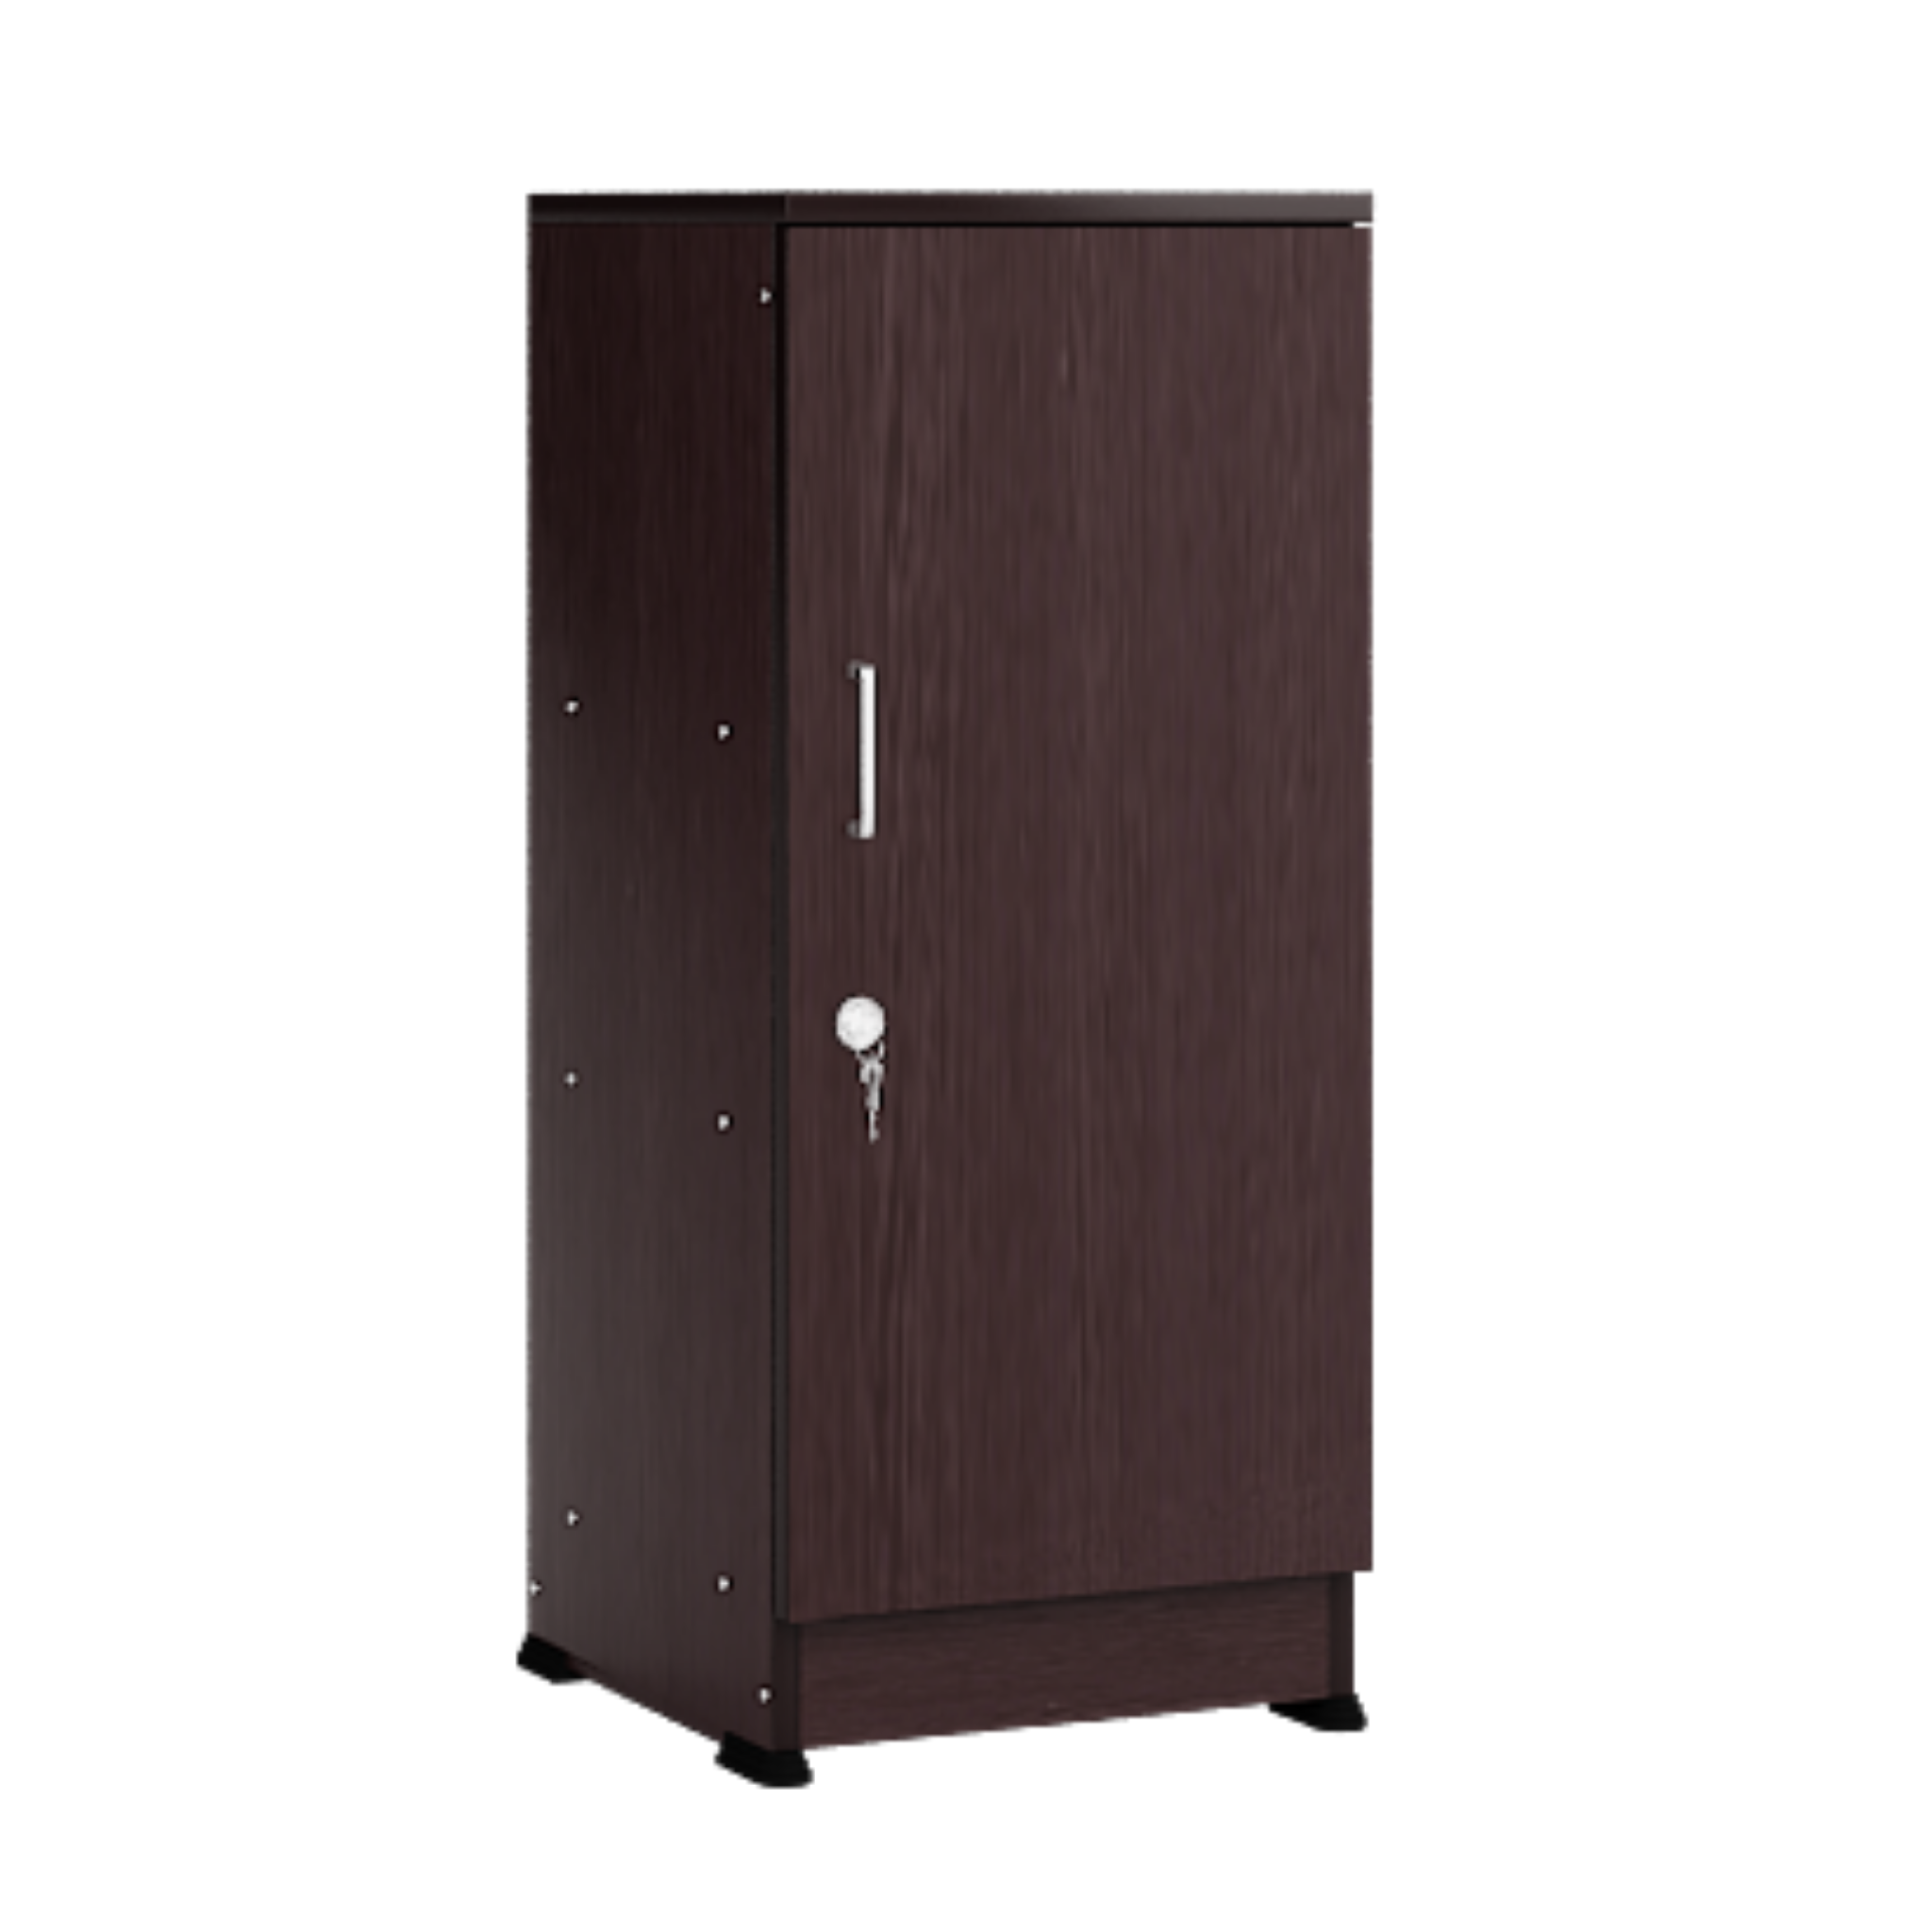 Single Door Cabinet For Storage